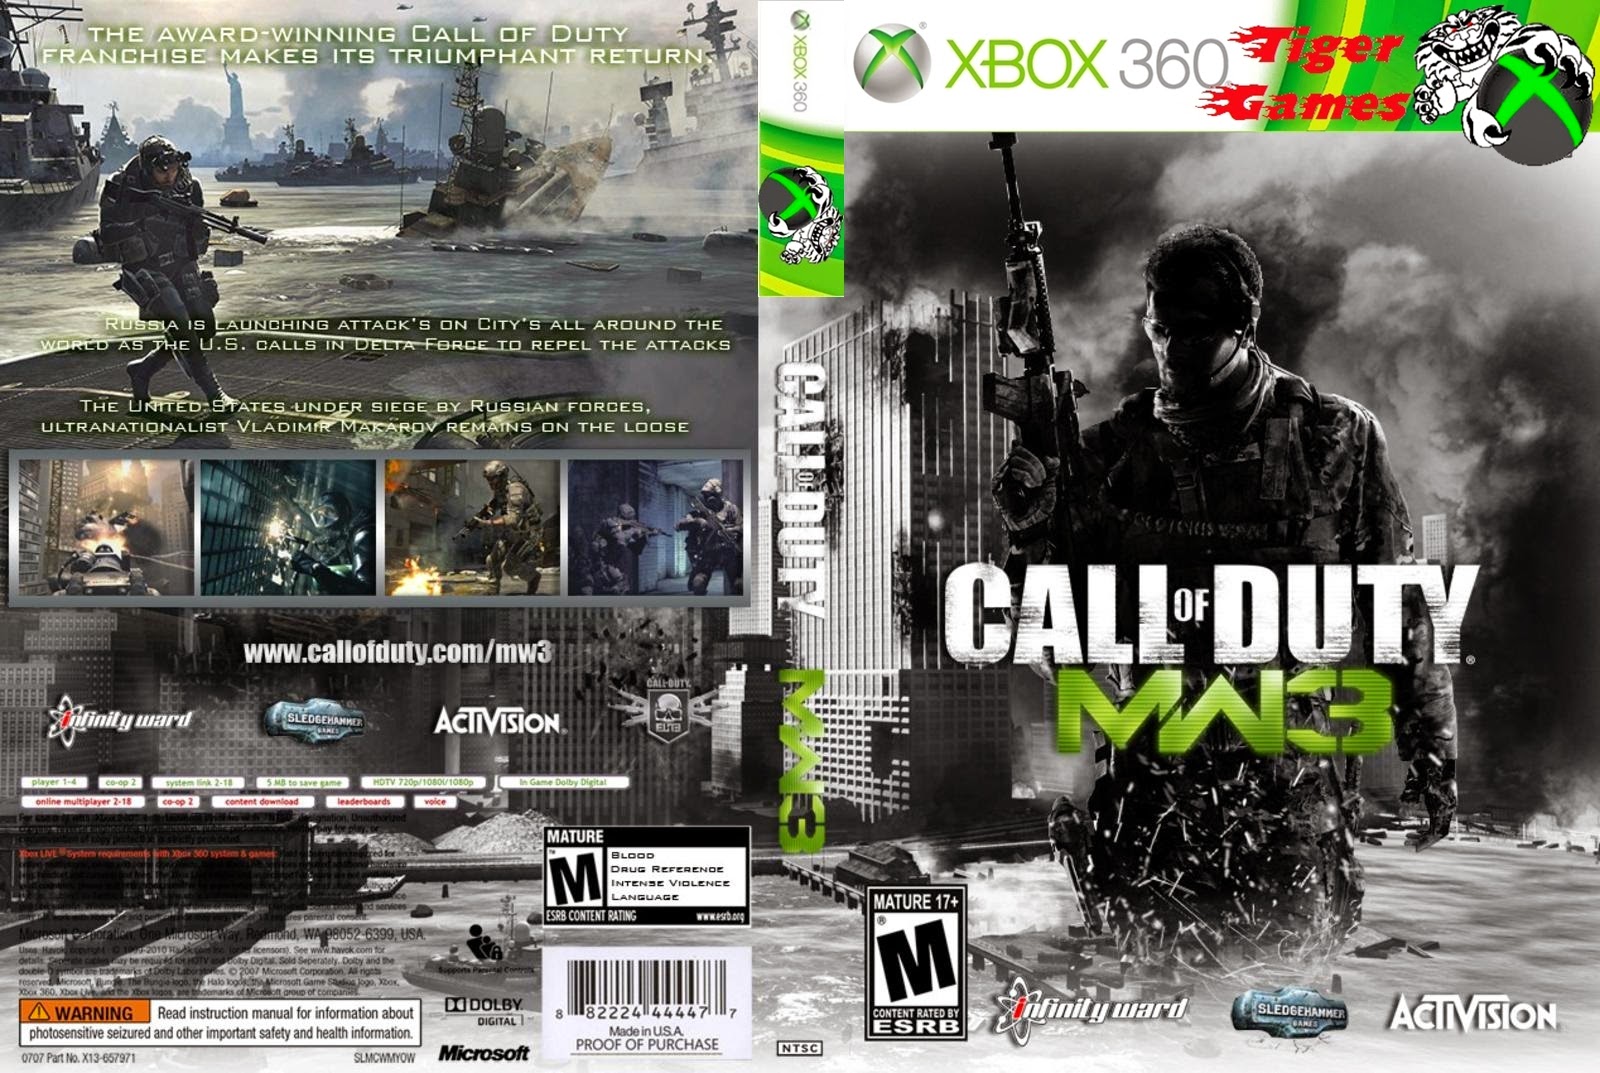 Call of duty xbox game. Cod mw3 Xbox 360. Call of Duty Modern Warfare 3 Xbox 360 русская версия. Call of Duty 3 Xbox 360 обложка. Call of Duty mw3 хбокс 360.